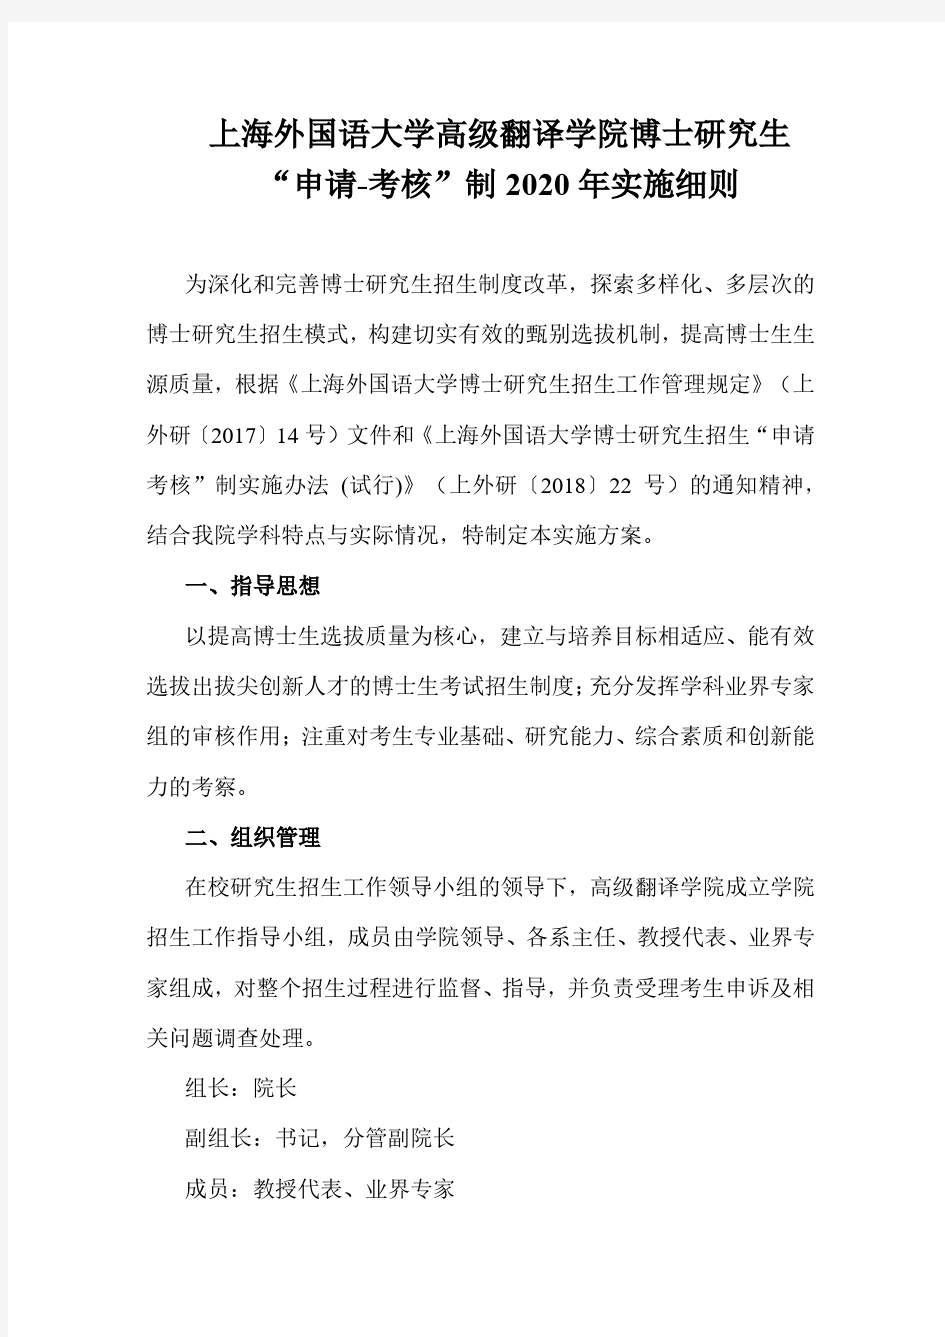 上海外国语大学高级翻译学院博士研究生申请考核制2020